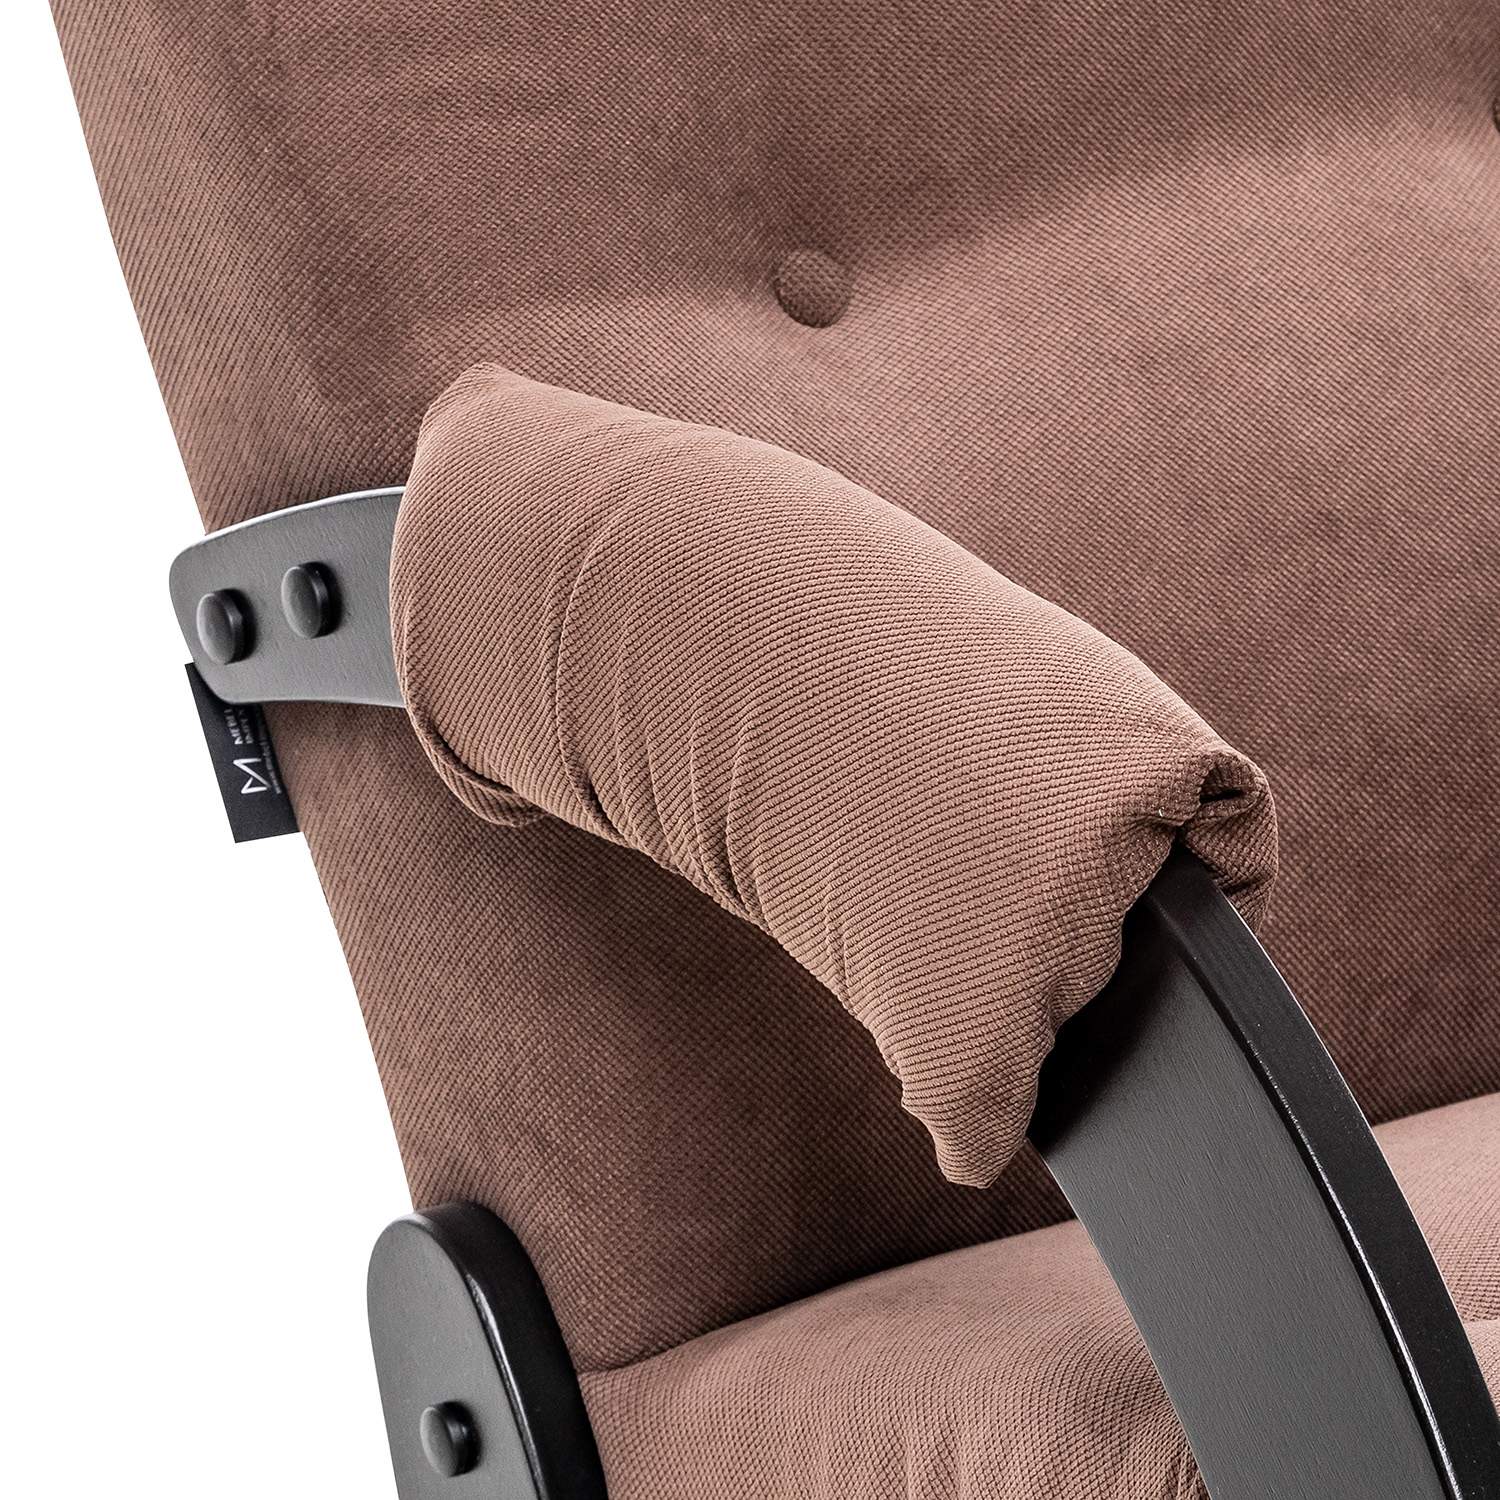 Кресло-глайдер Модель 68, венге, ткань Verona Brown